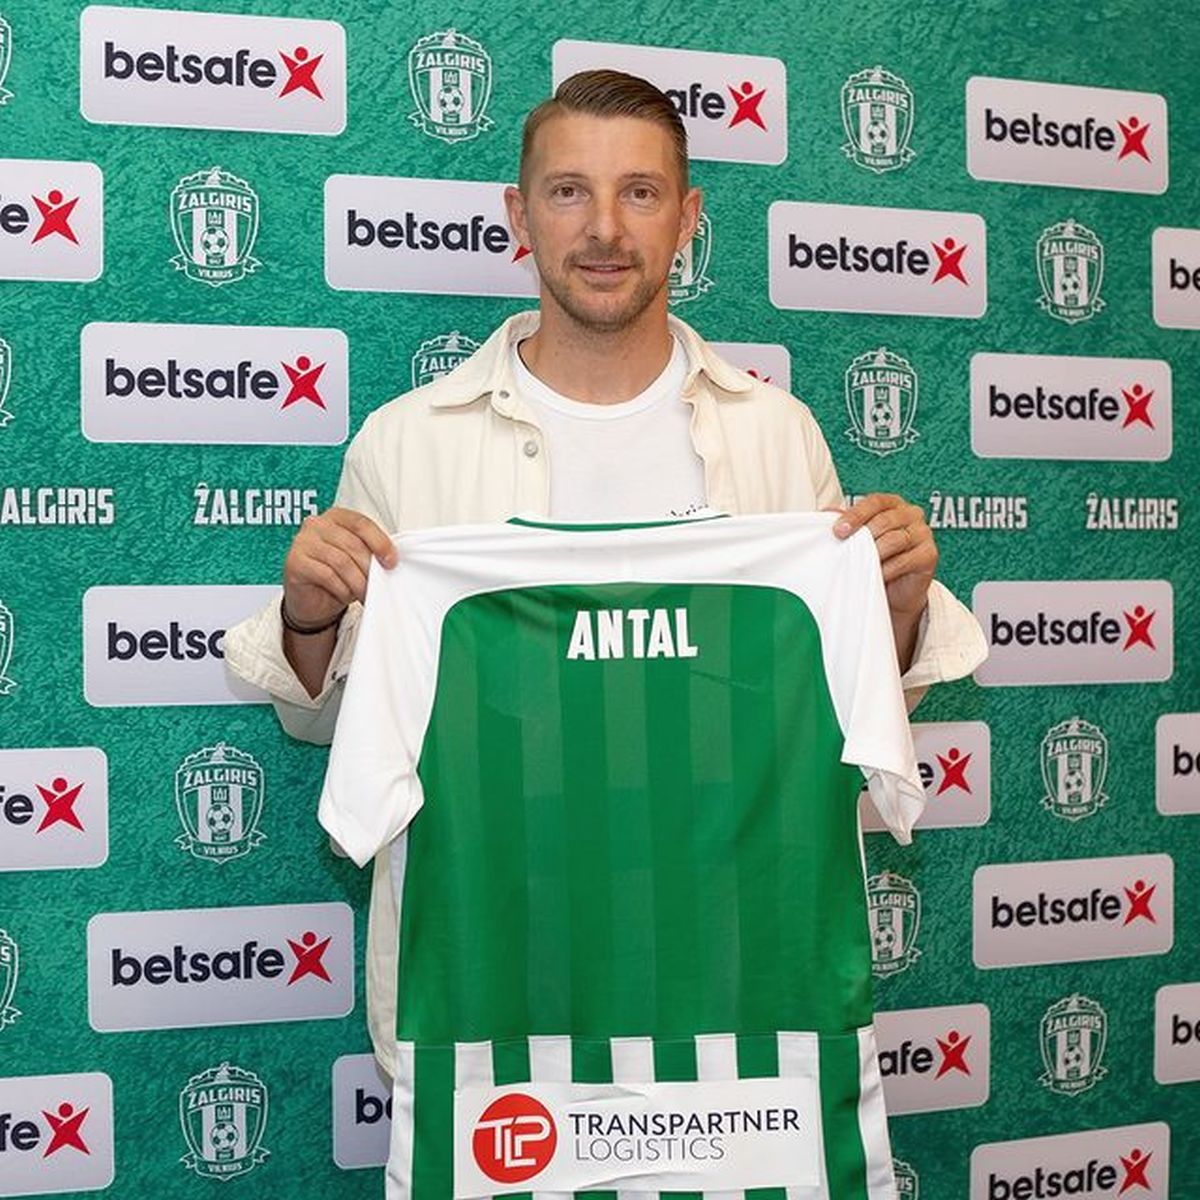 Liviu Antal, de pe ultimul loc direct în Liga Campionilor! Transfer neașteptat: „Bine ai revenit!”